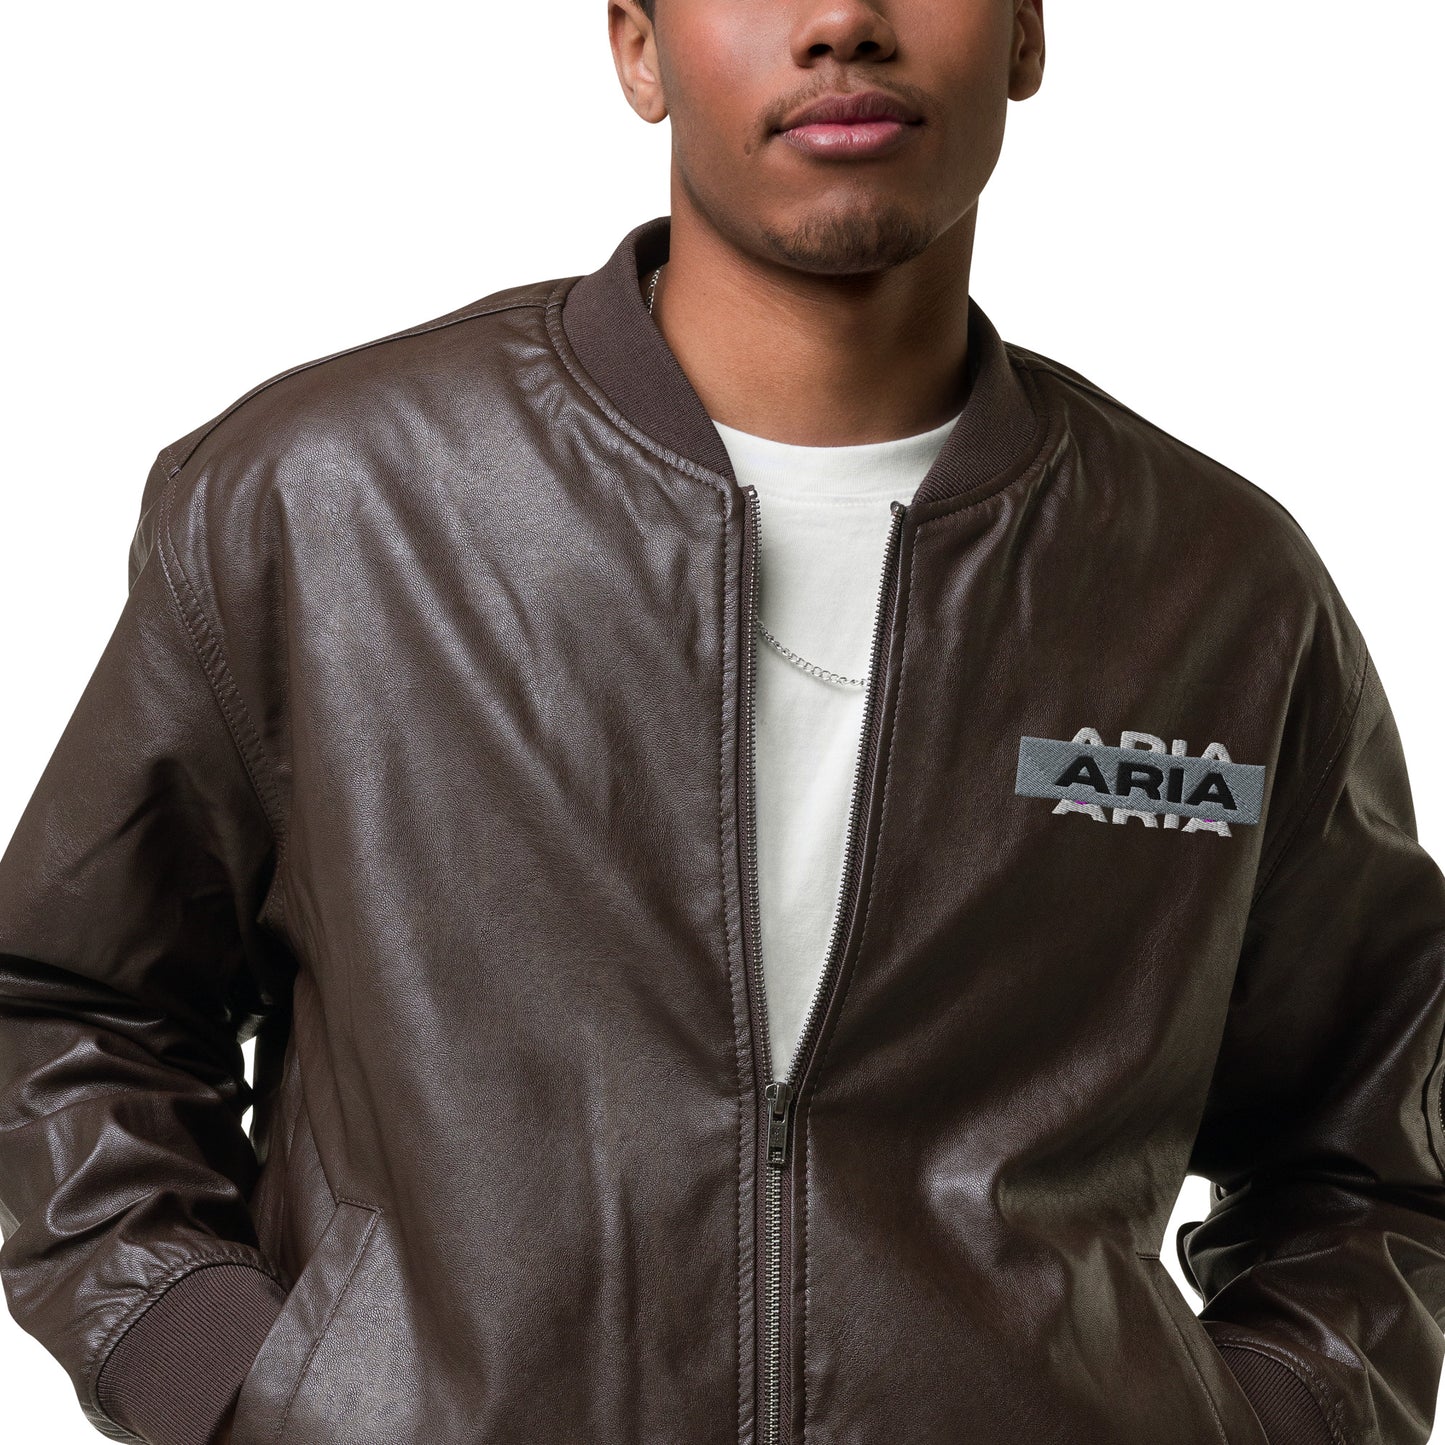 Aria Leather Bomber Jacket